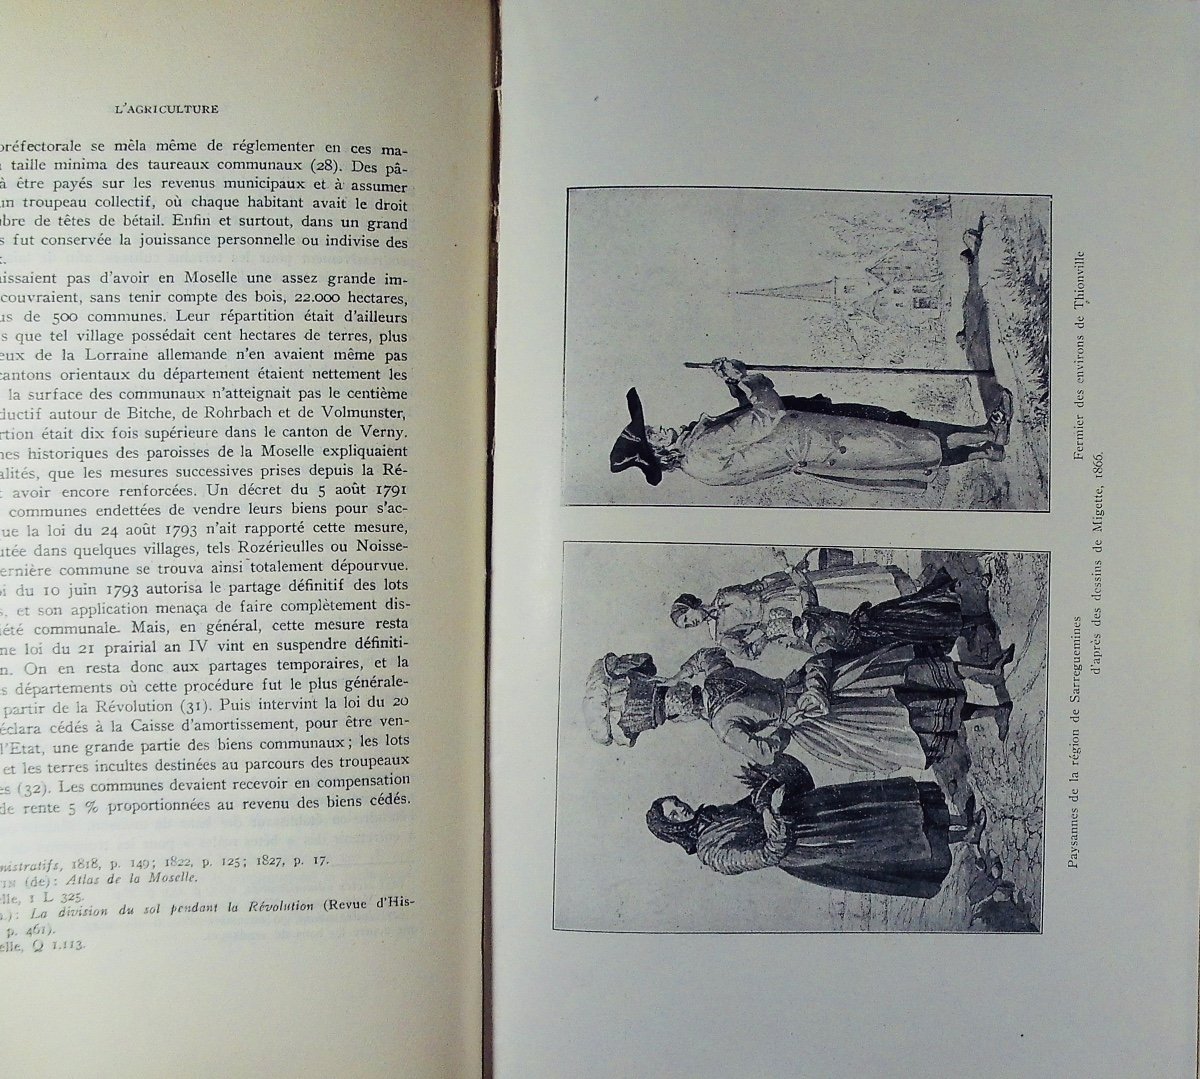 CONTAMINE (Henri) - Metz et la Moselle de 1814 à 1870. Nancy, 1932, 2 volumes.-photo-4